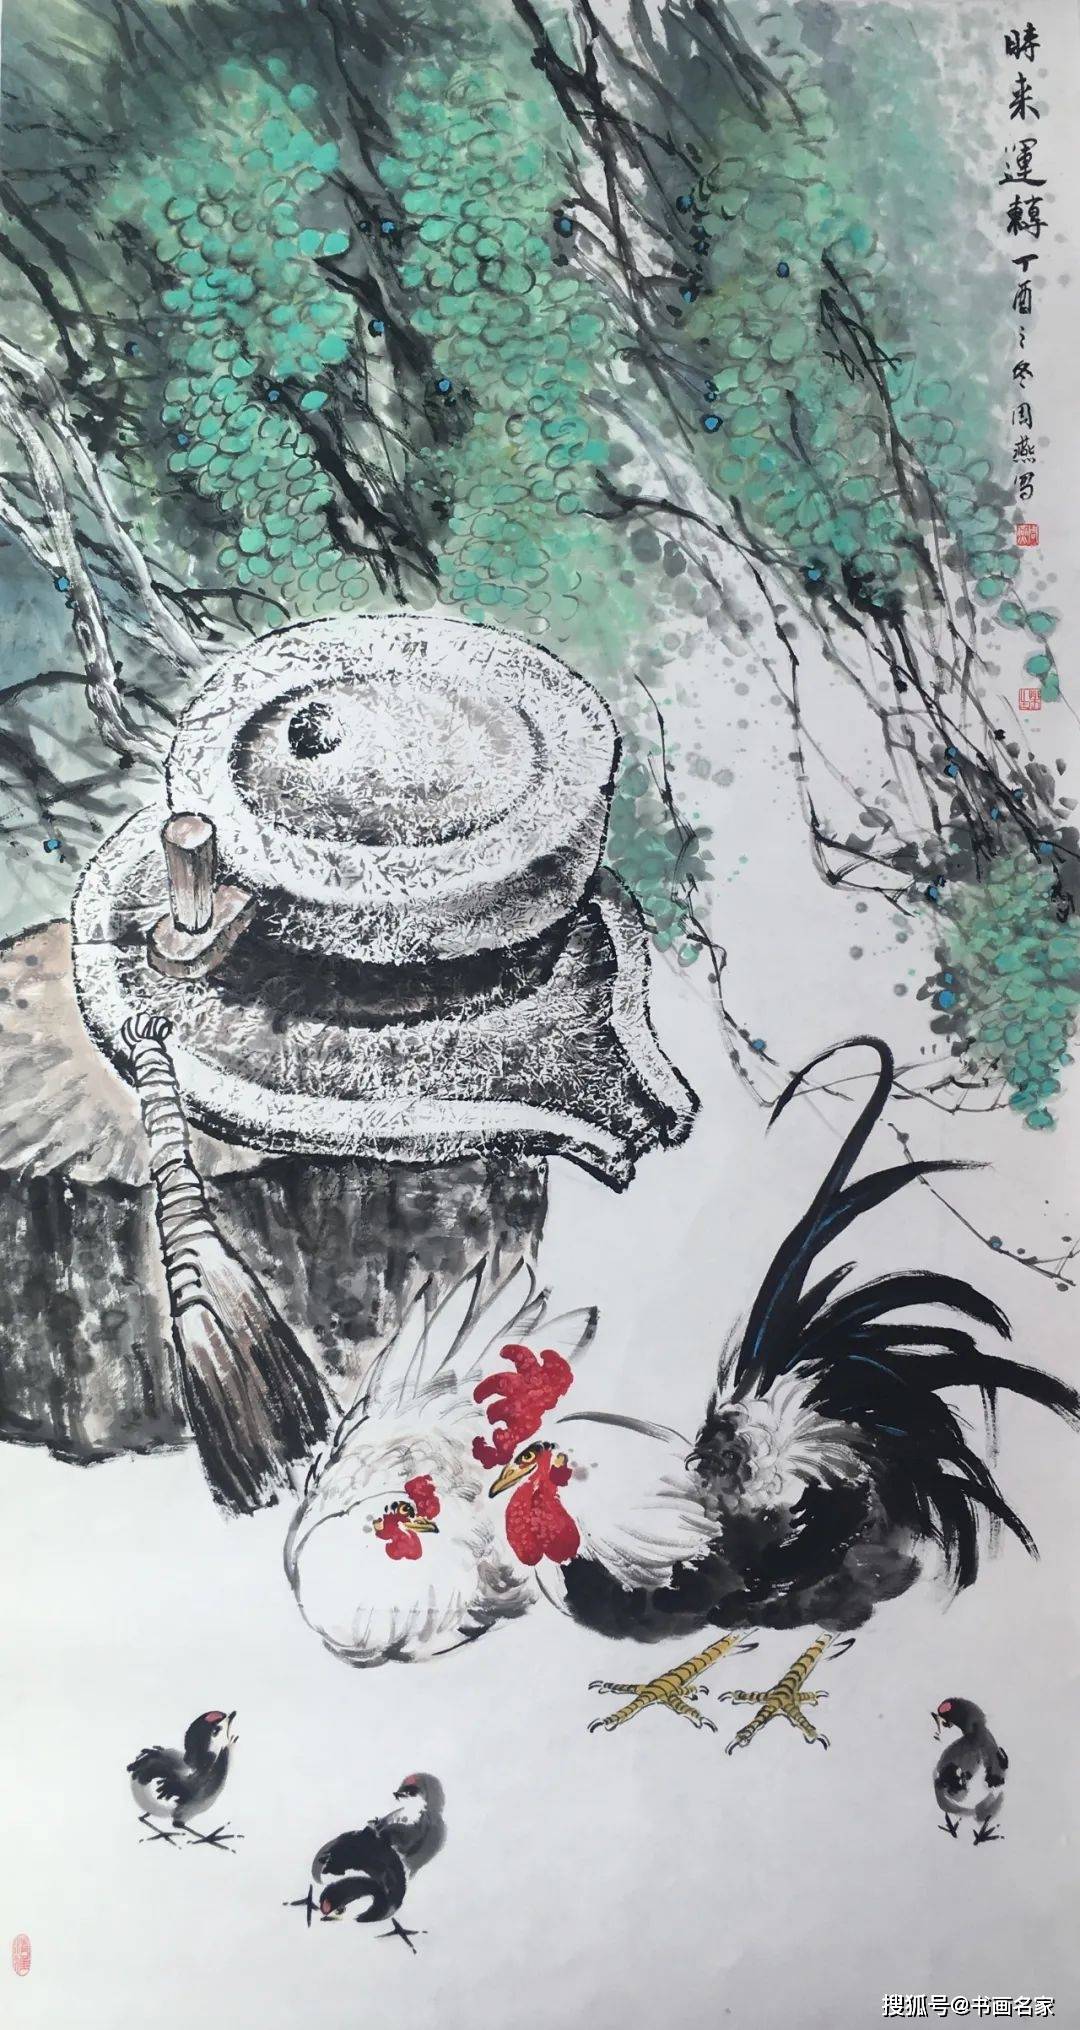 「艺术中国 」—— 周燕 中国花鸟画作品欣赏